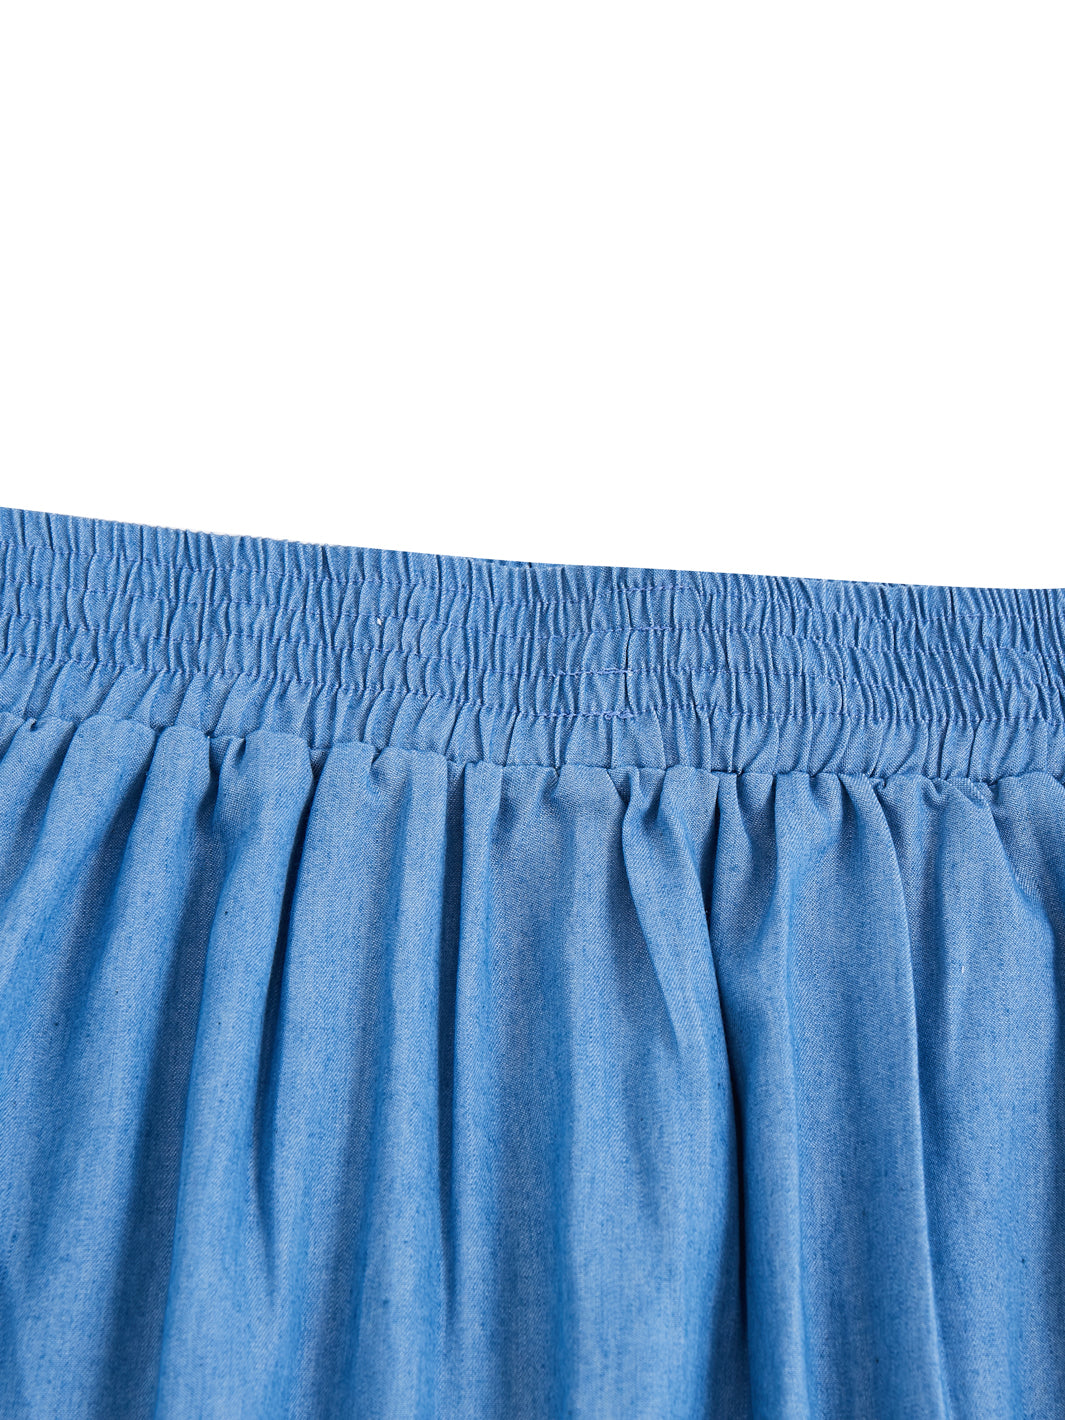 Denim Maxi Length Skirt - Lt. Blue